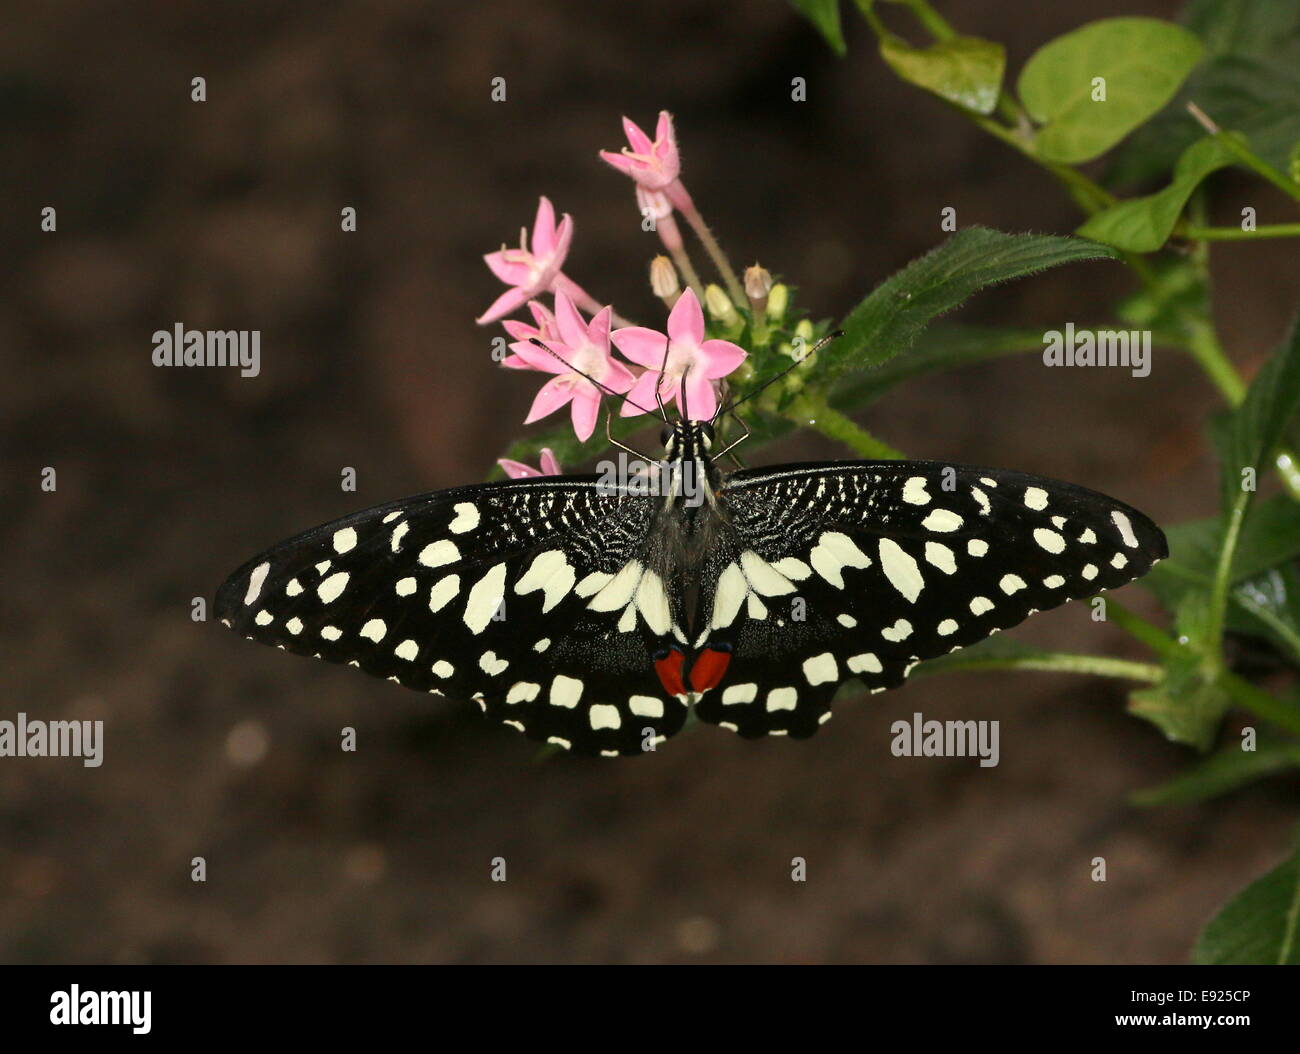 A coda di rondine a scacchi (Papilio demoleus) a.k.a. Succo di limone o lime a coda di rondine o piccole farfalle di agrumi, di alimentazione su un fiore Foto Stock